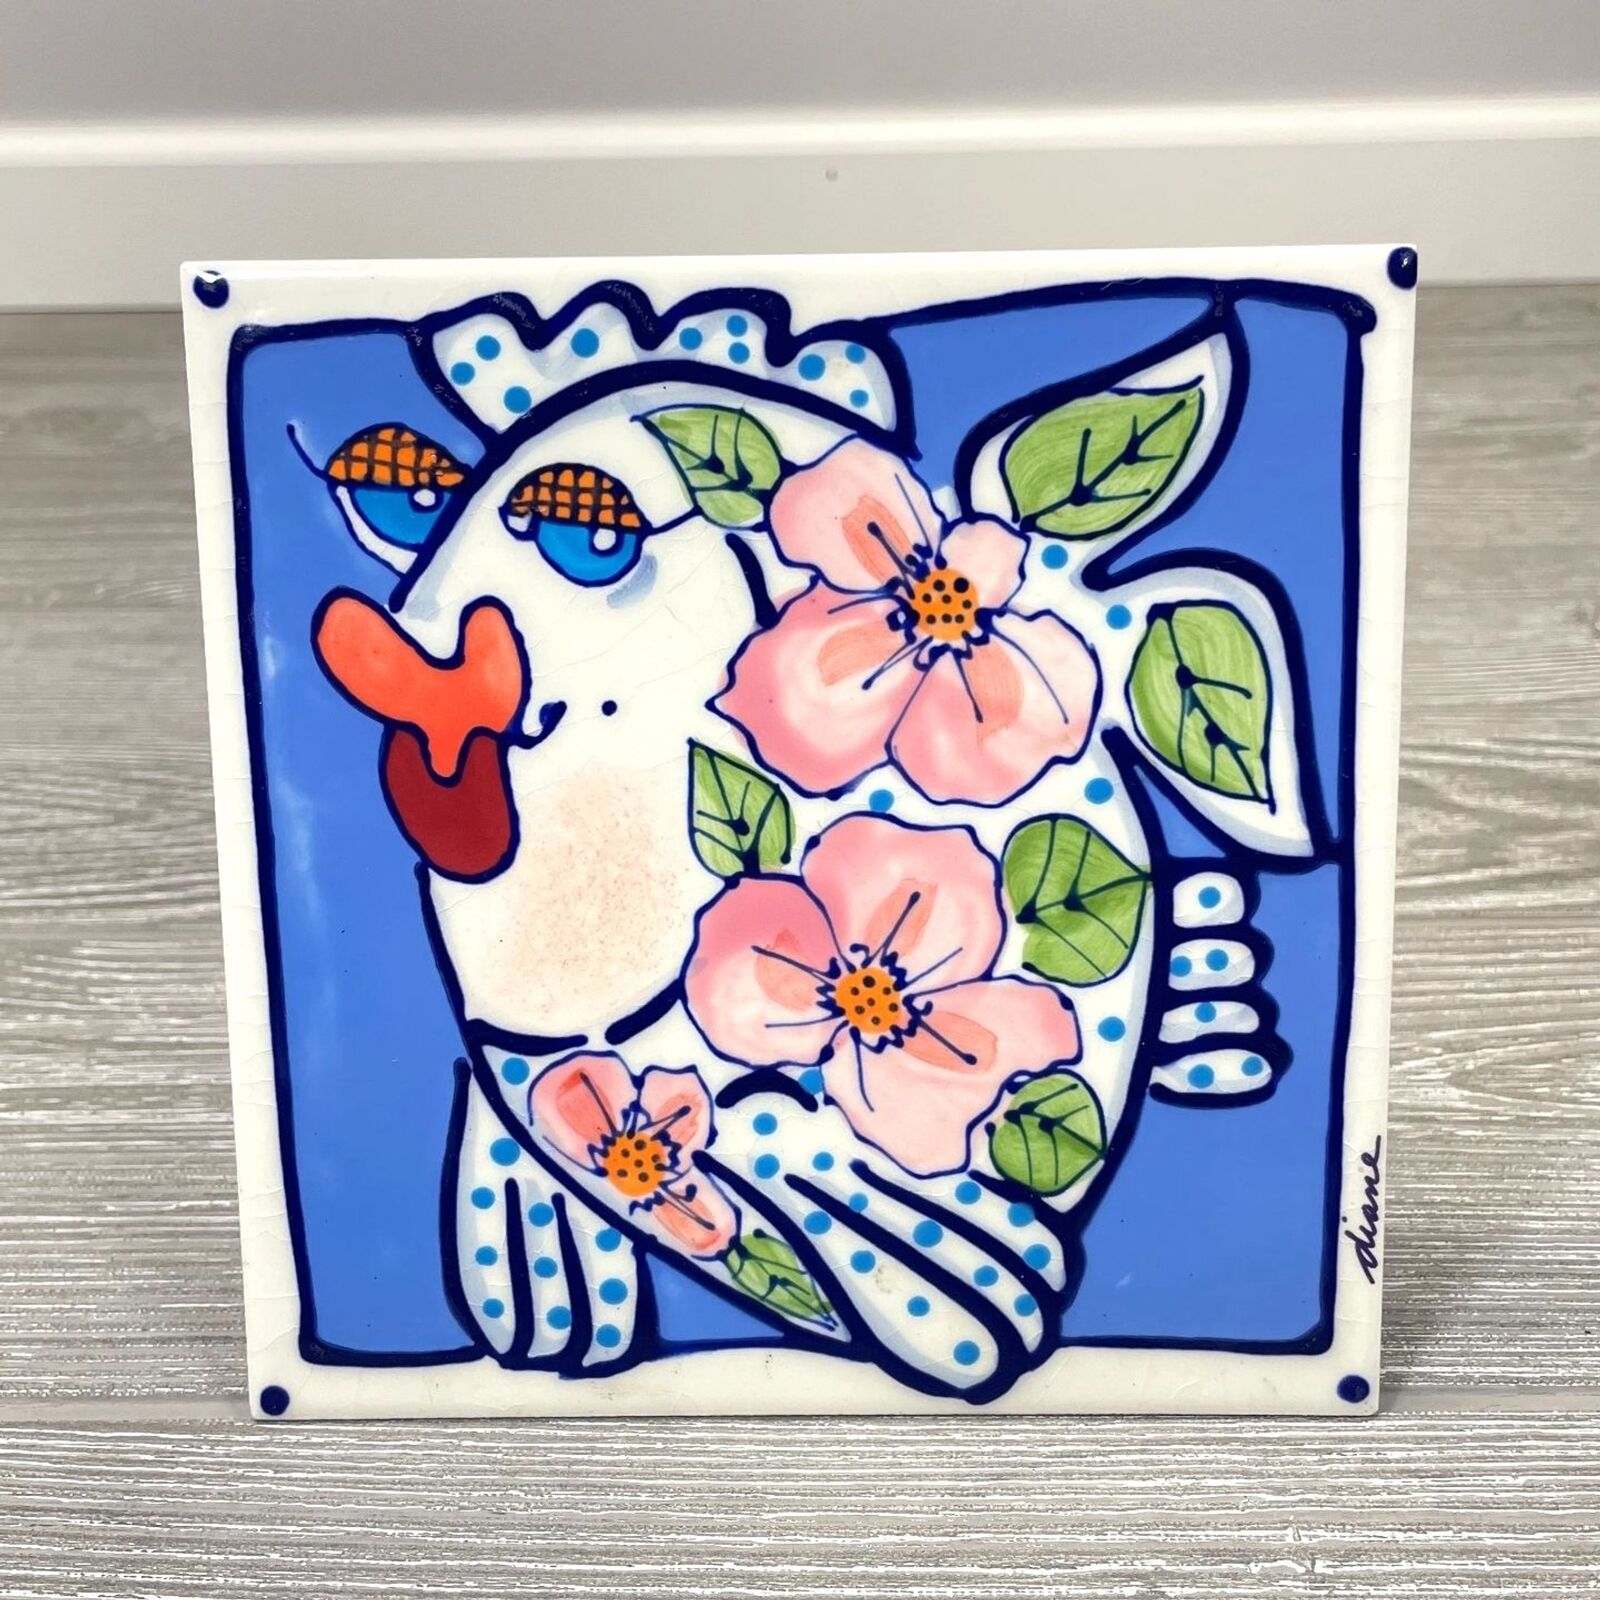 2001 Diane Artware Kissing Fish 6in Ceramic Tile Trivet Decor Pink Blue Floral